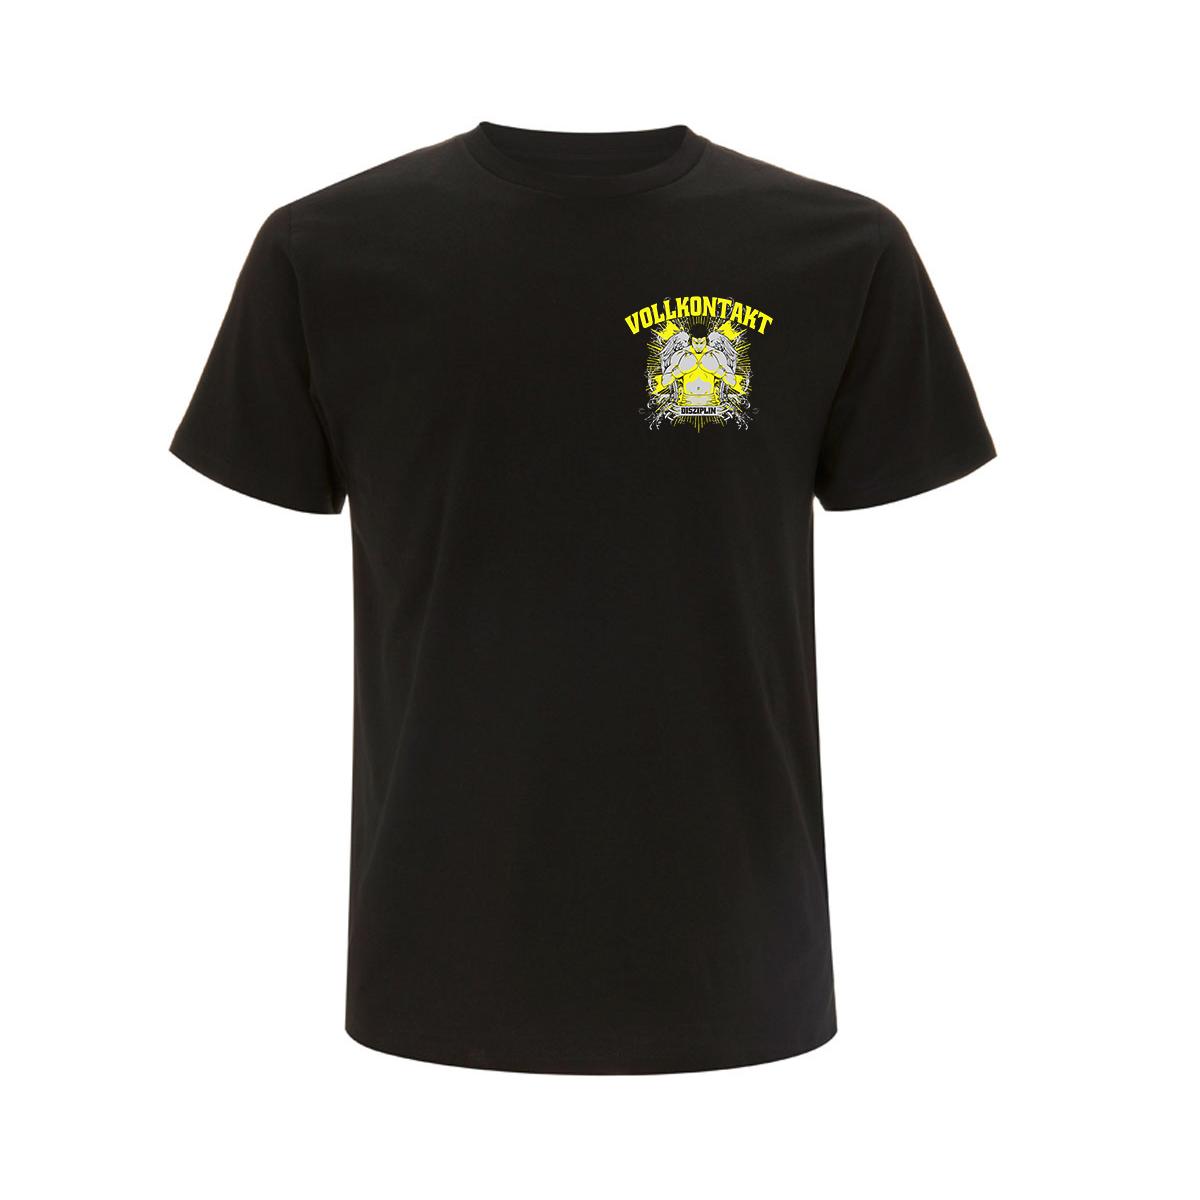 Disziplin - Vollkontakt - Männer T-Shirt